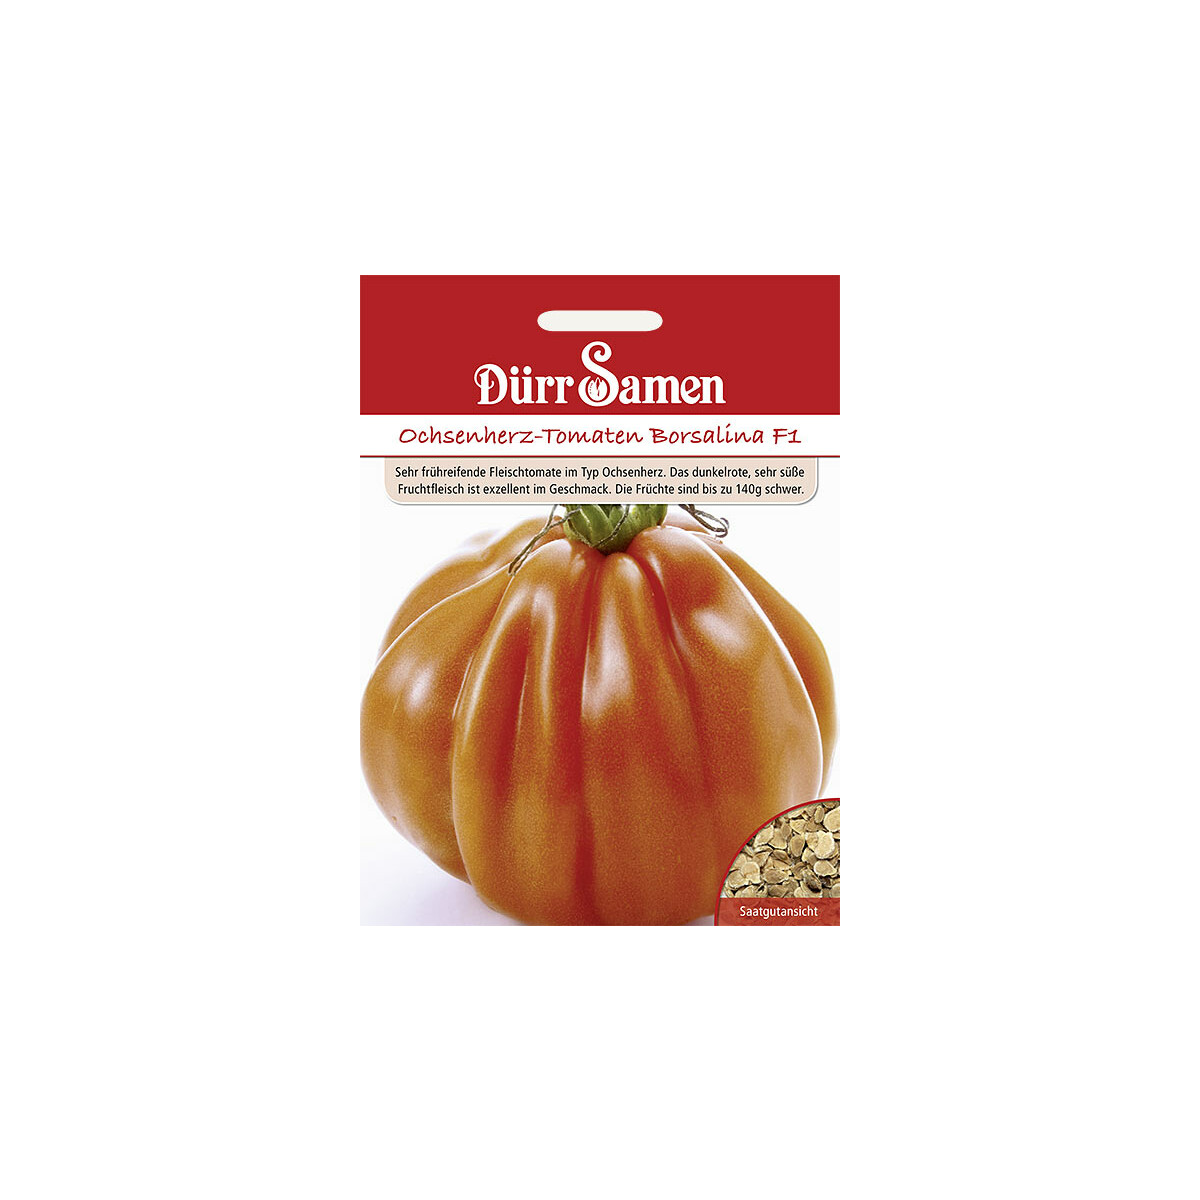 Ochsenherz-Tomaten Borsalina F1